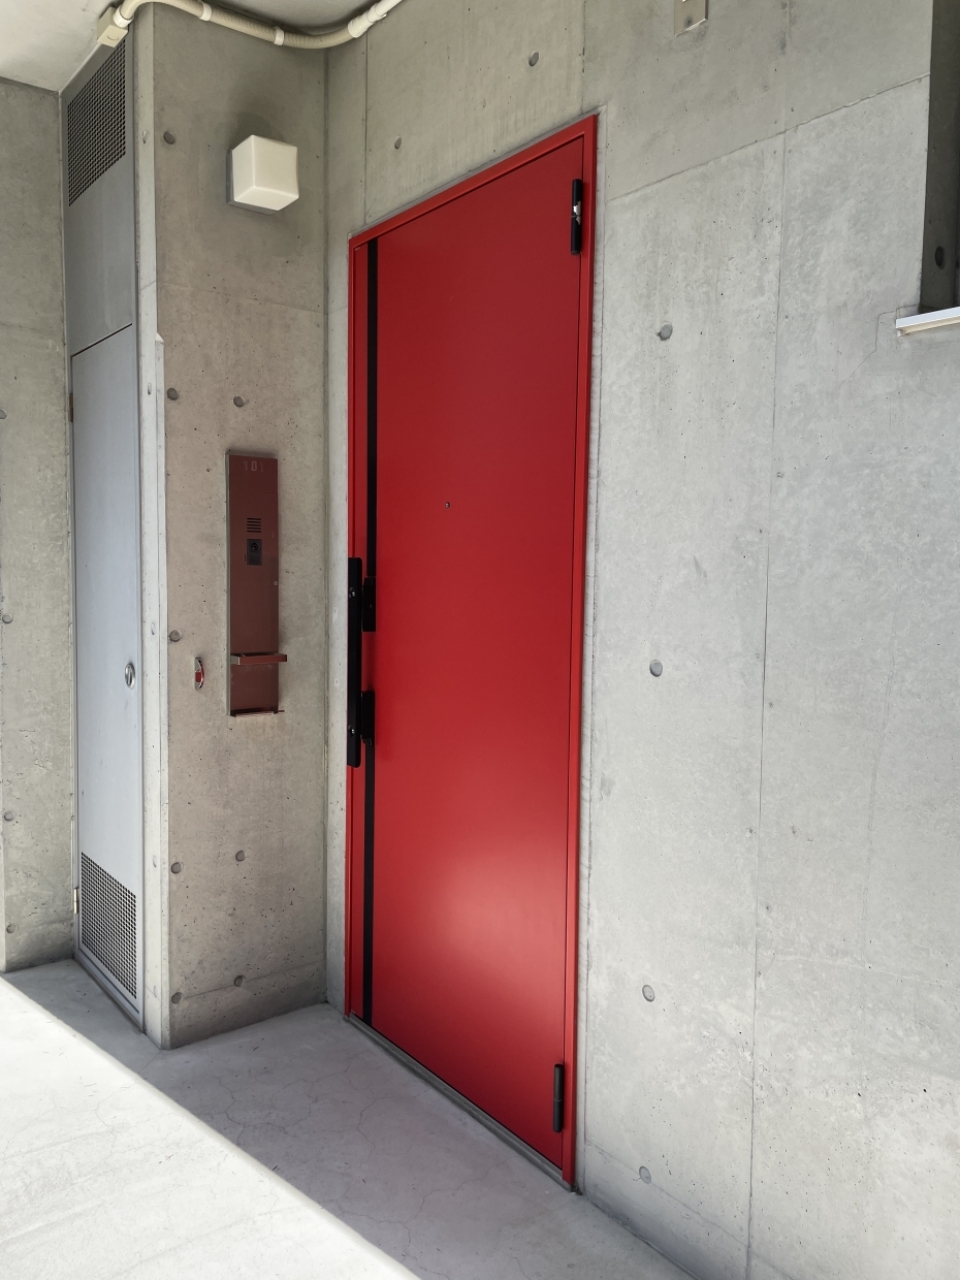 特徴的な赤い扉